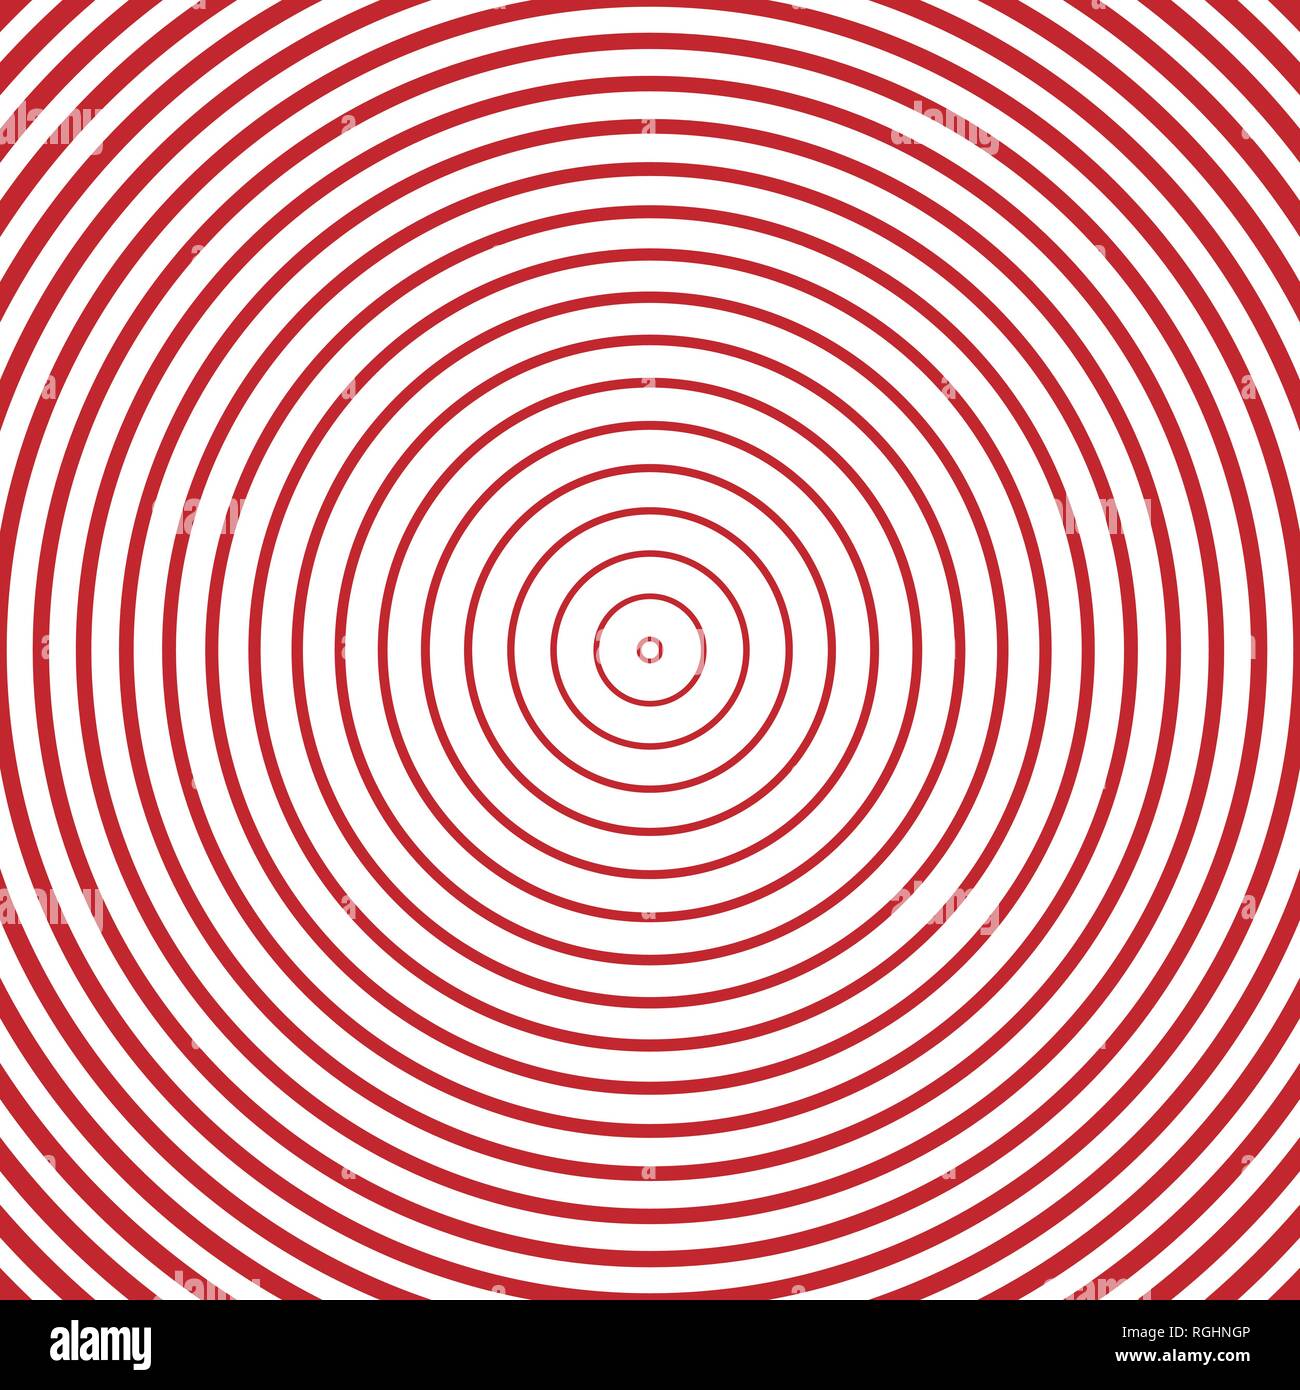 Hypnose konzentrische Kreise Abstrakt konzentrische Kreise Textur, Hintergrundmuster im modernen Stil. Stock Vektor